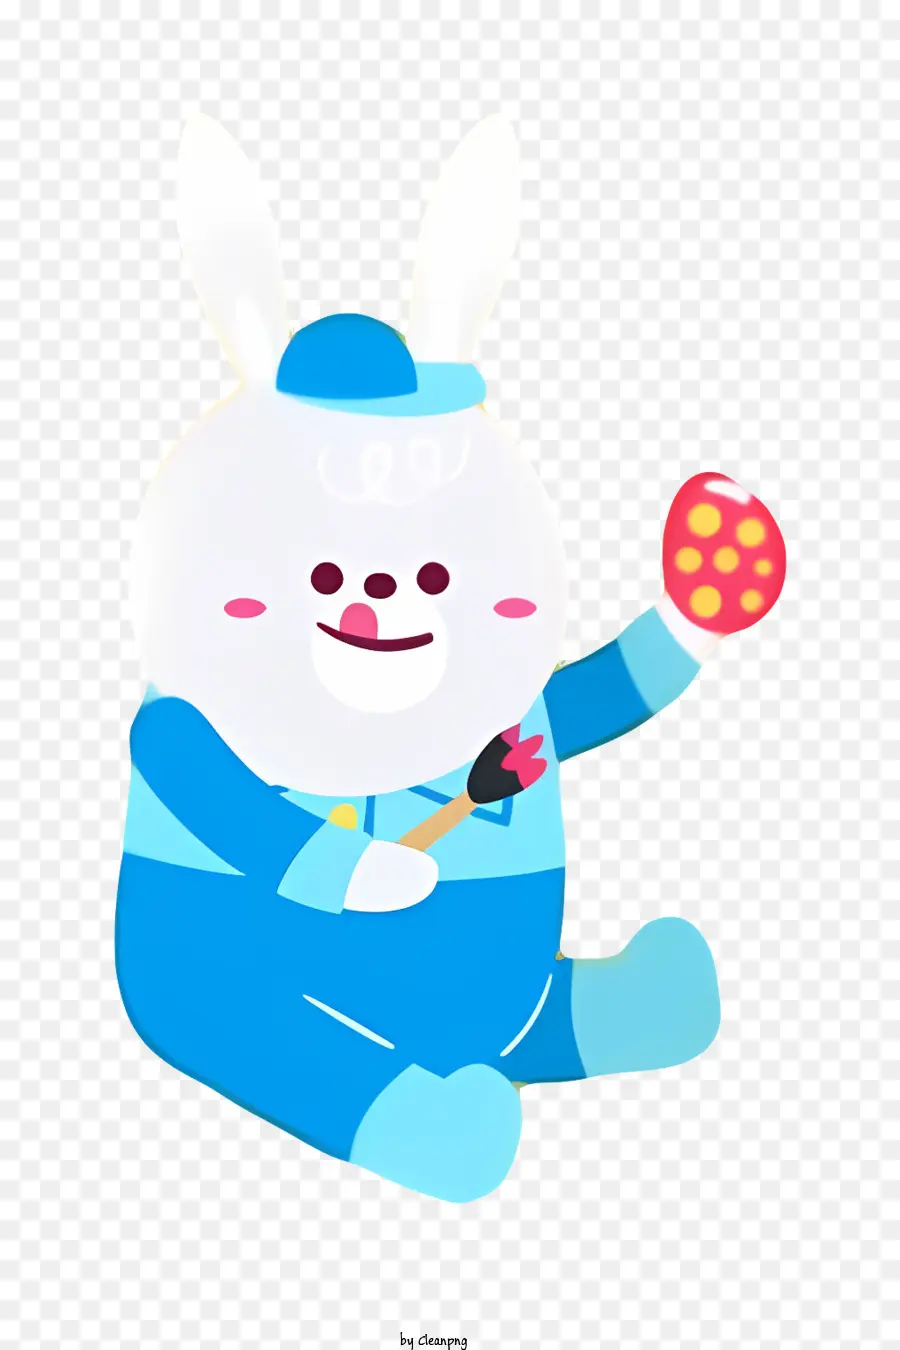 Hasen Gesicht Cartoon Charakter blaue Kleidung rote Handschuhe lächelnde Gesicht - Cartooncharakter in blauen Kleidern, die Ei halten